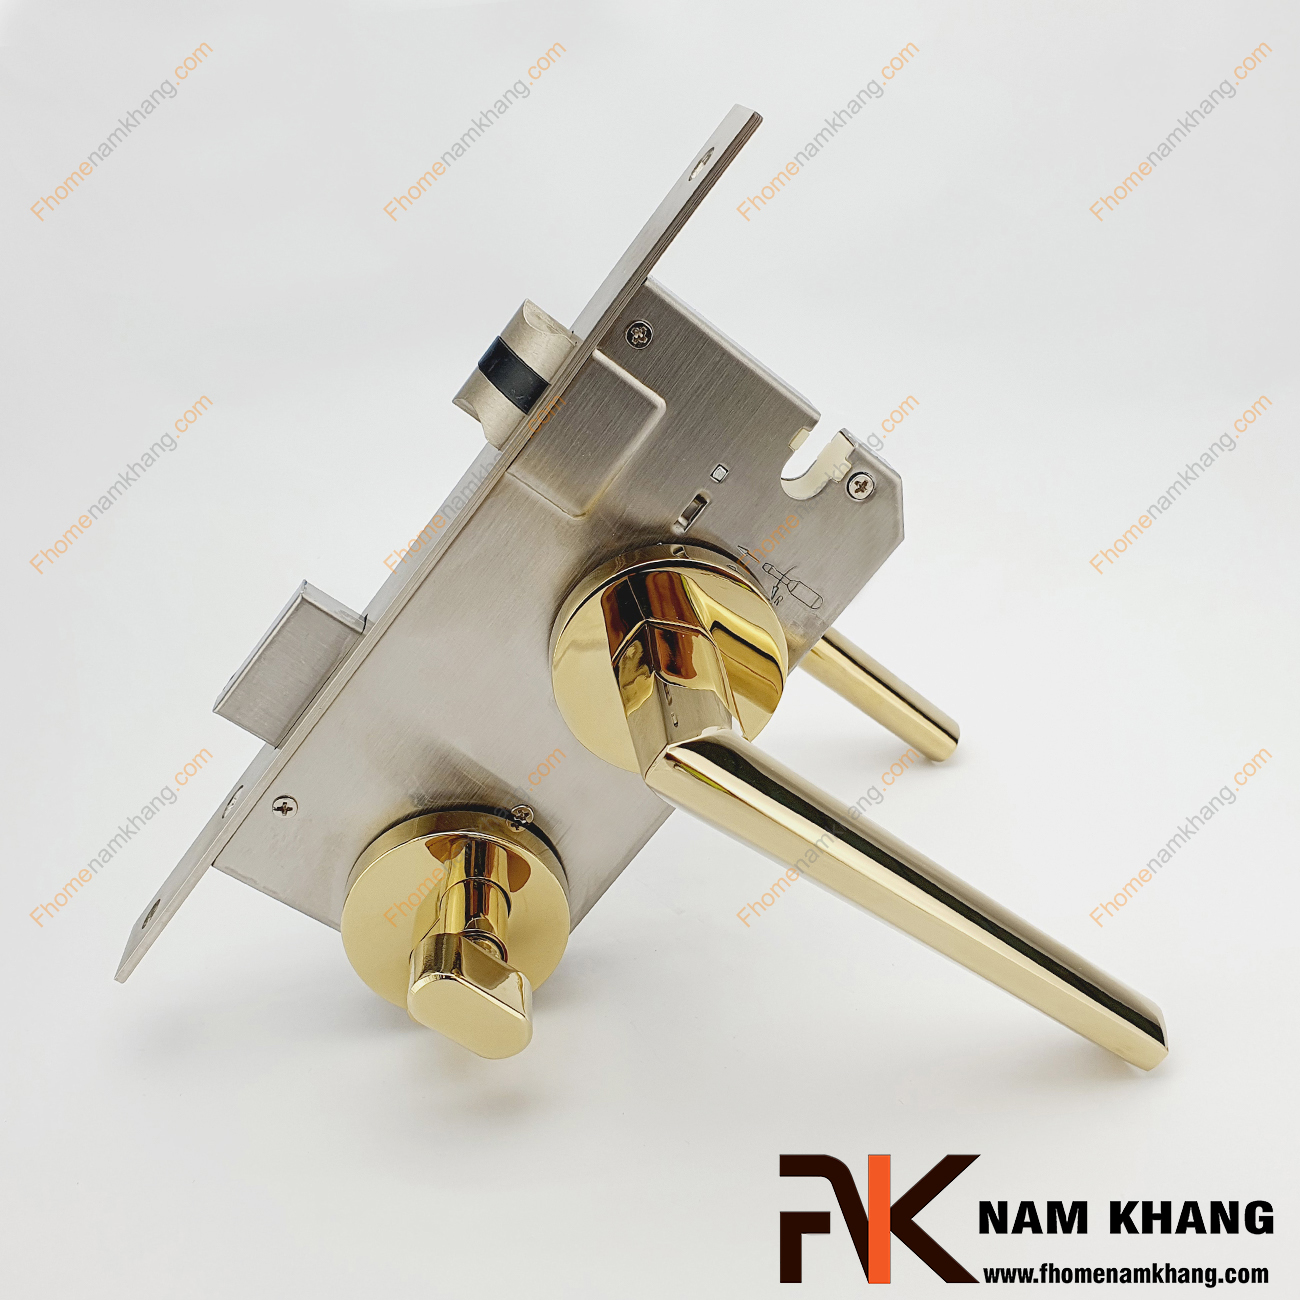 Khóa cửa phân thể hợp kim màu vàng bóng NK573-PVD có thiết kế nhỏ gọn, đơn giản nhưng đầy tinh tế. Dòng khóa này có thiết kế ốp khóa và tay gạt riêng biệt, tạo được sự độc đáo.